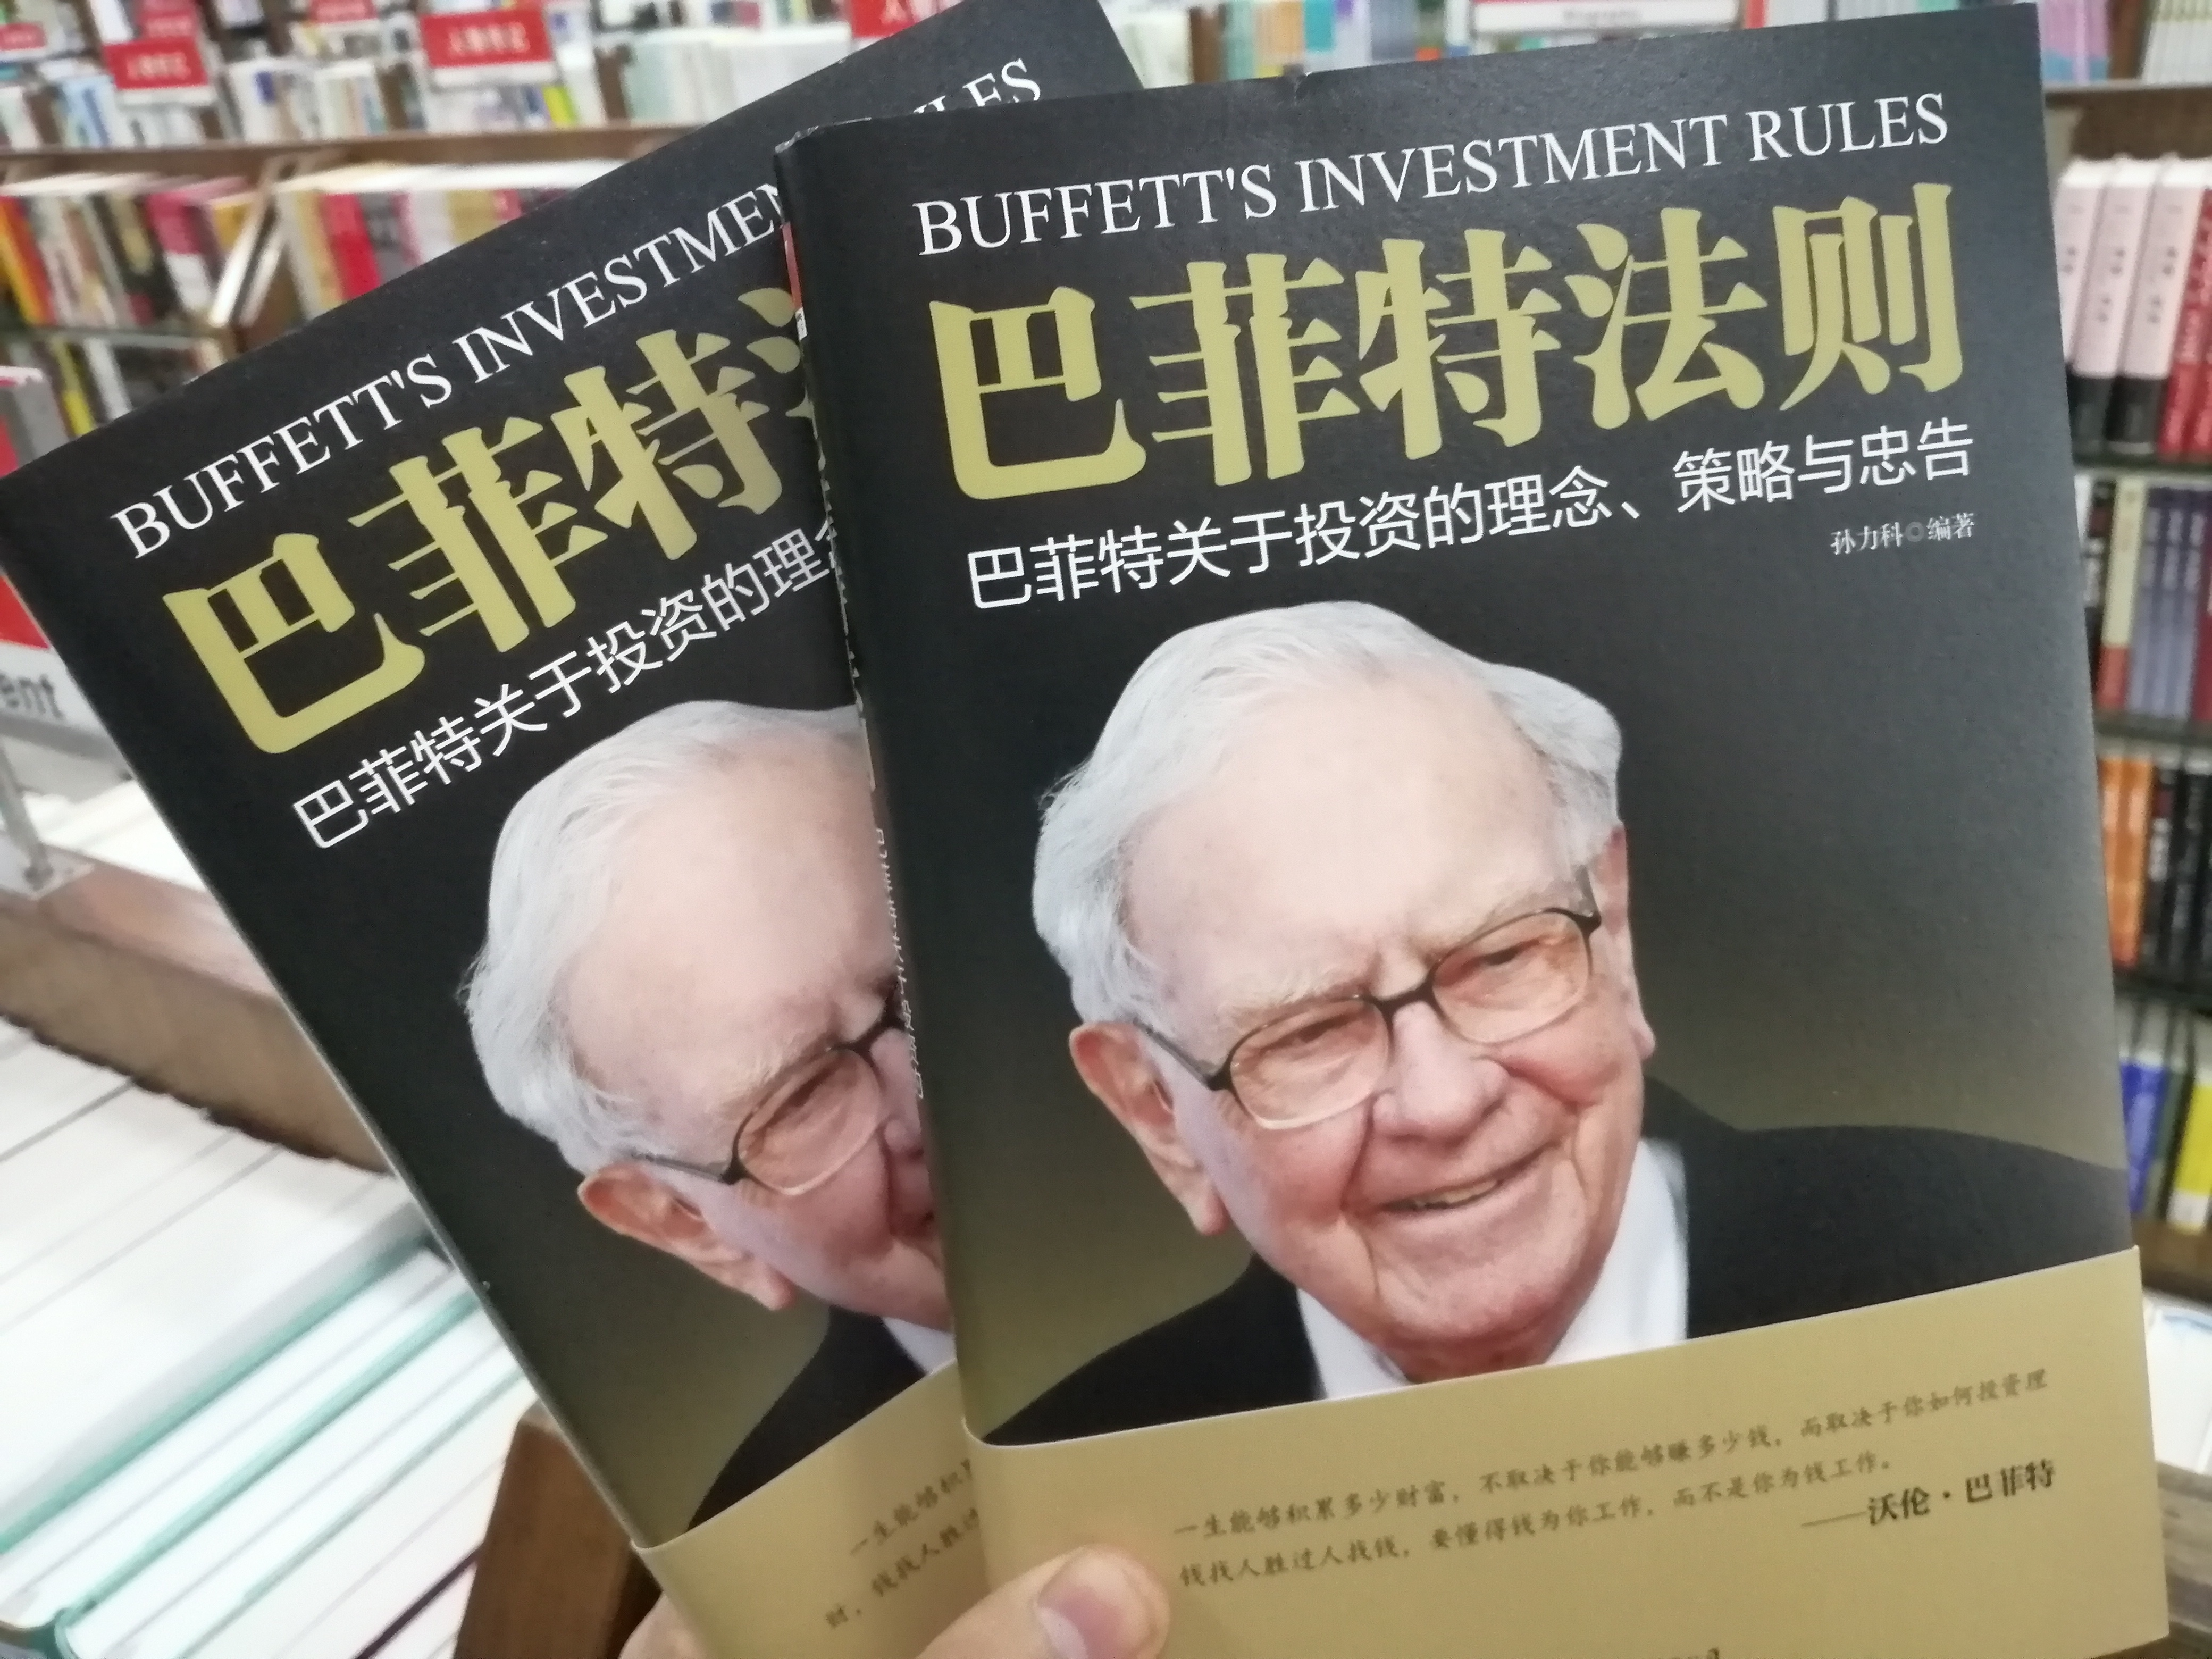 价值投资同样适用于中国，我们应如何学习巴菲特的价值投资？